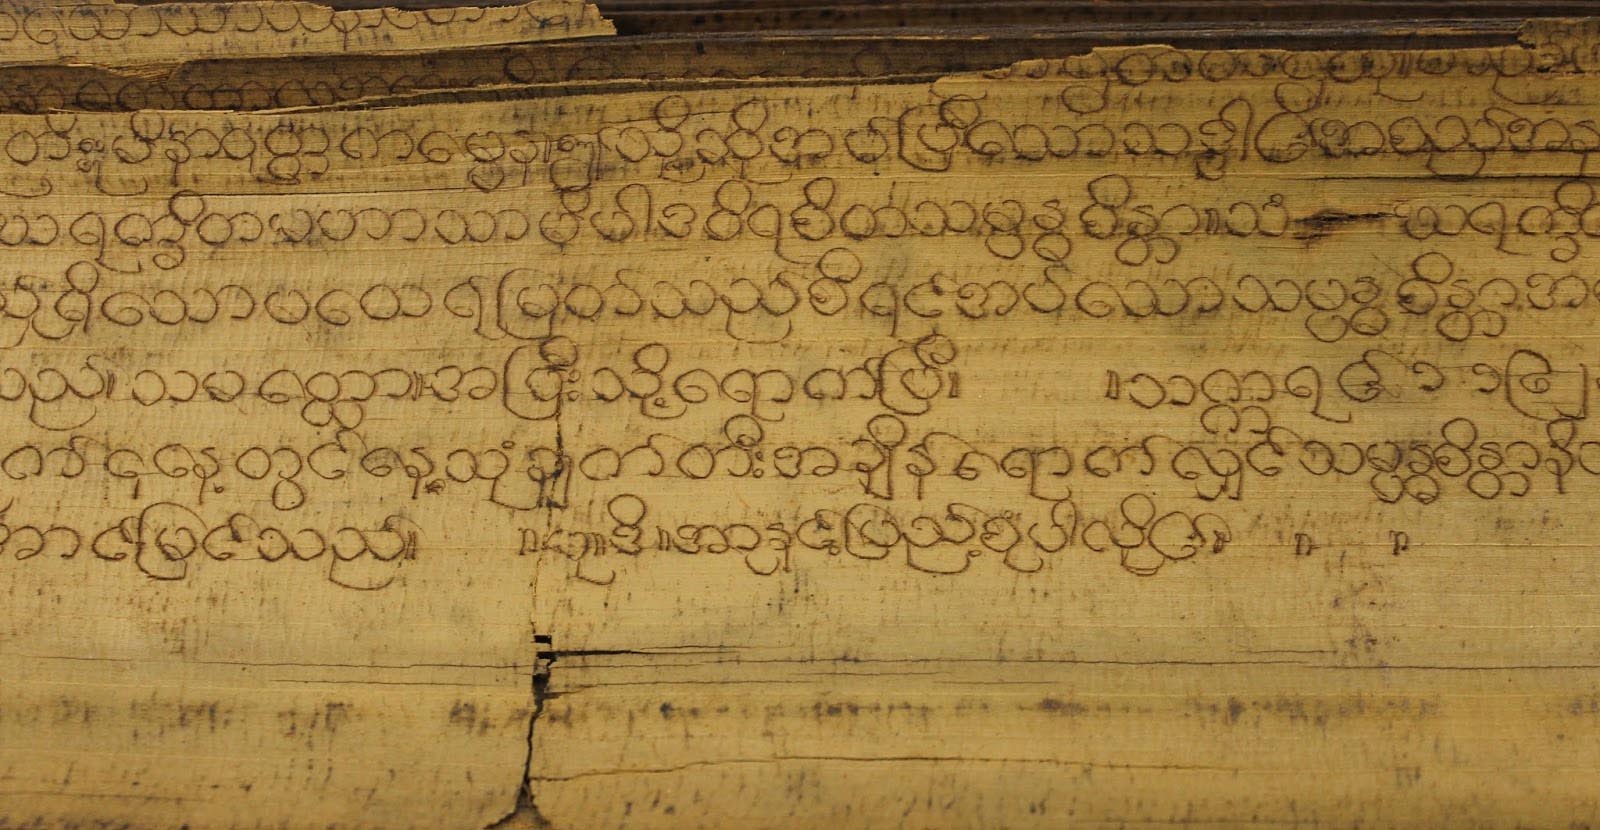 Close up of hand-written Burmese text.